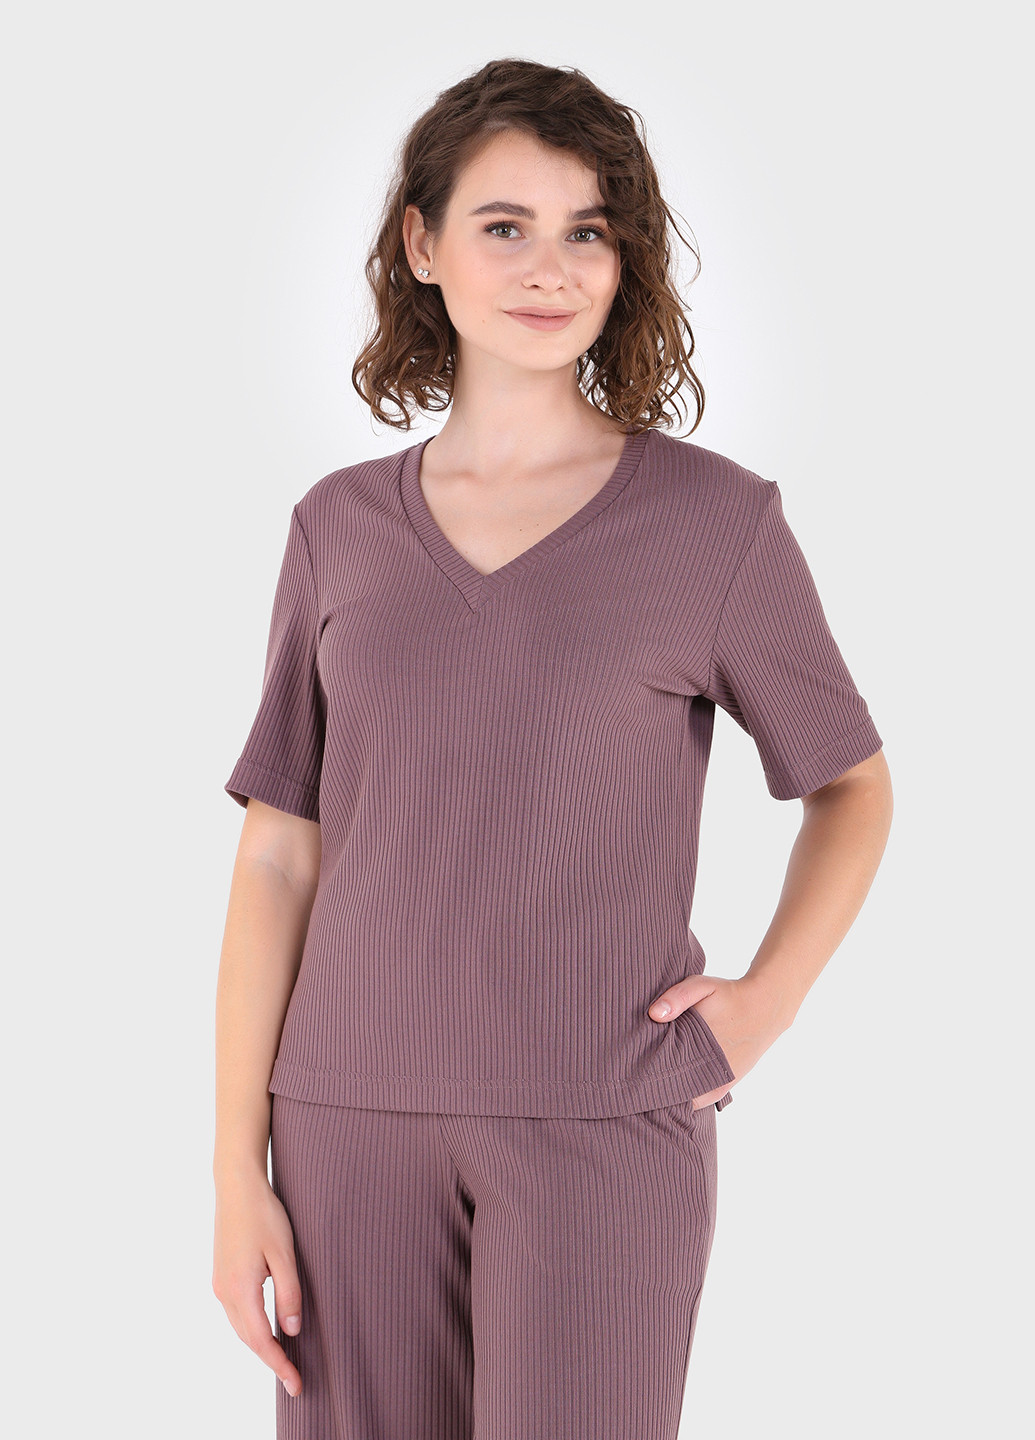 Жіночі штани кльош в рубчик фіолетового кольору Амаранті 600000070 Merlini амаранти (257533392)